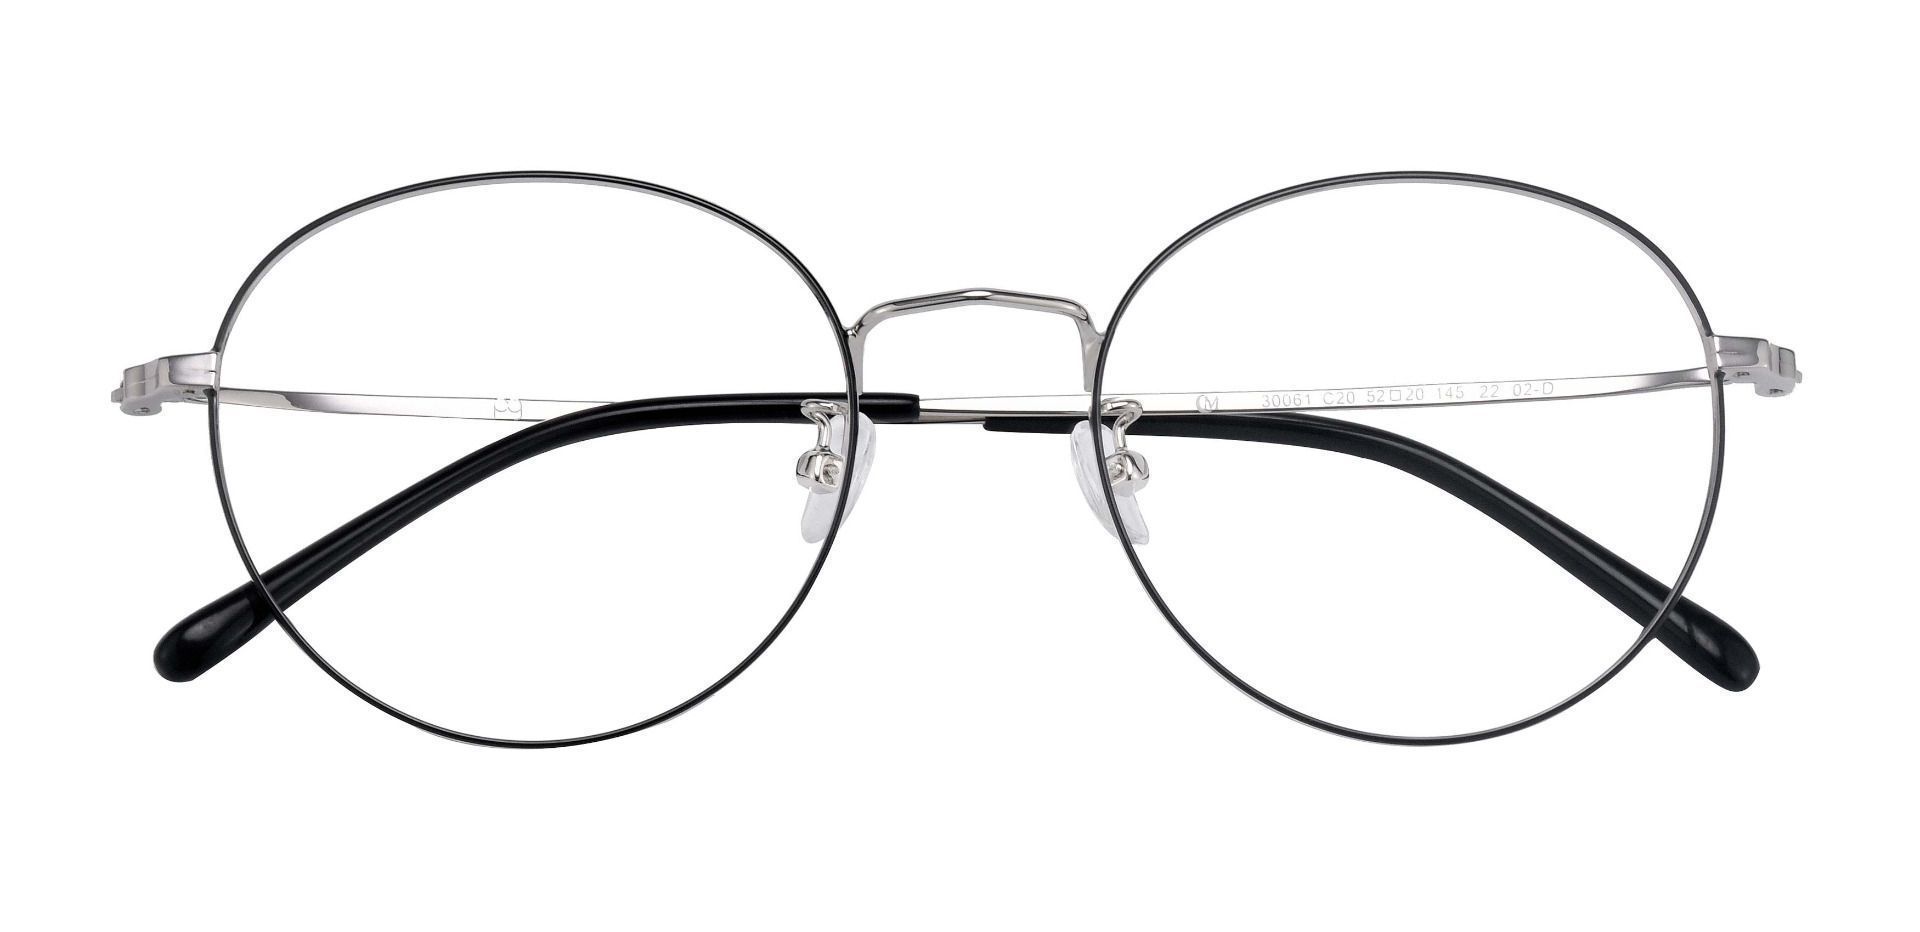 Spade Round Non-Rx Glasses -  Black/silver